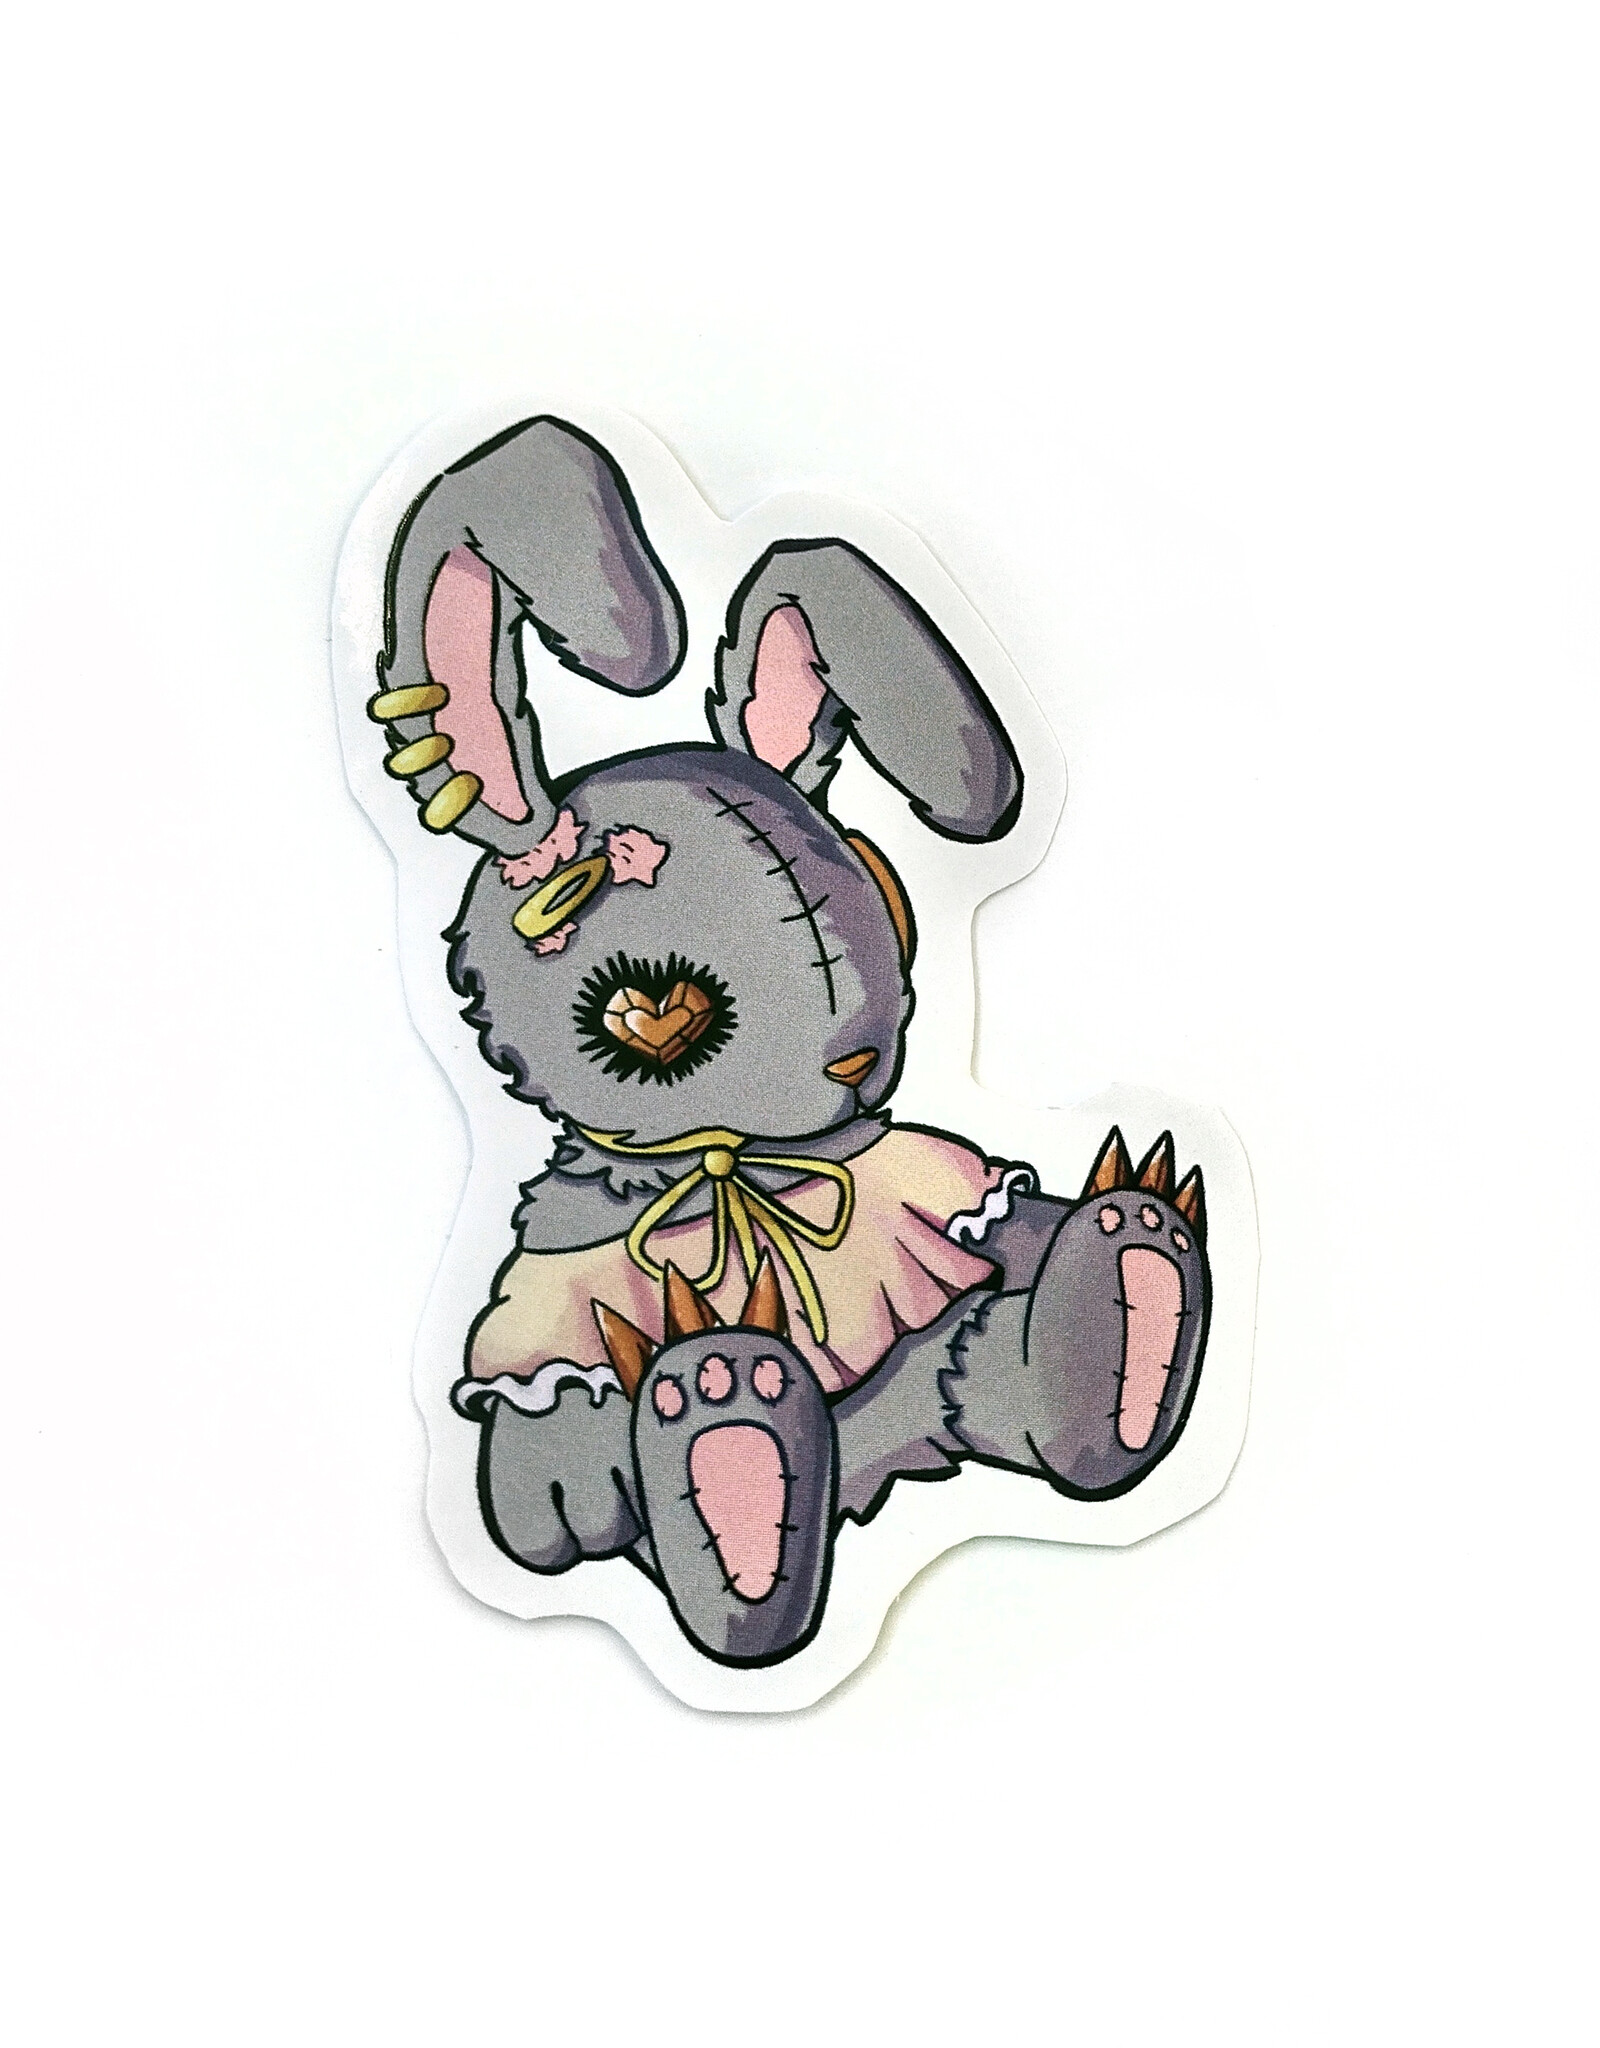 Broken Bunny Sticker (Dark) by Nick Hides Art